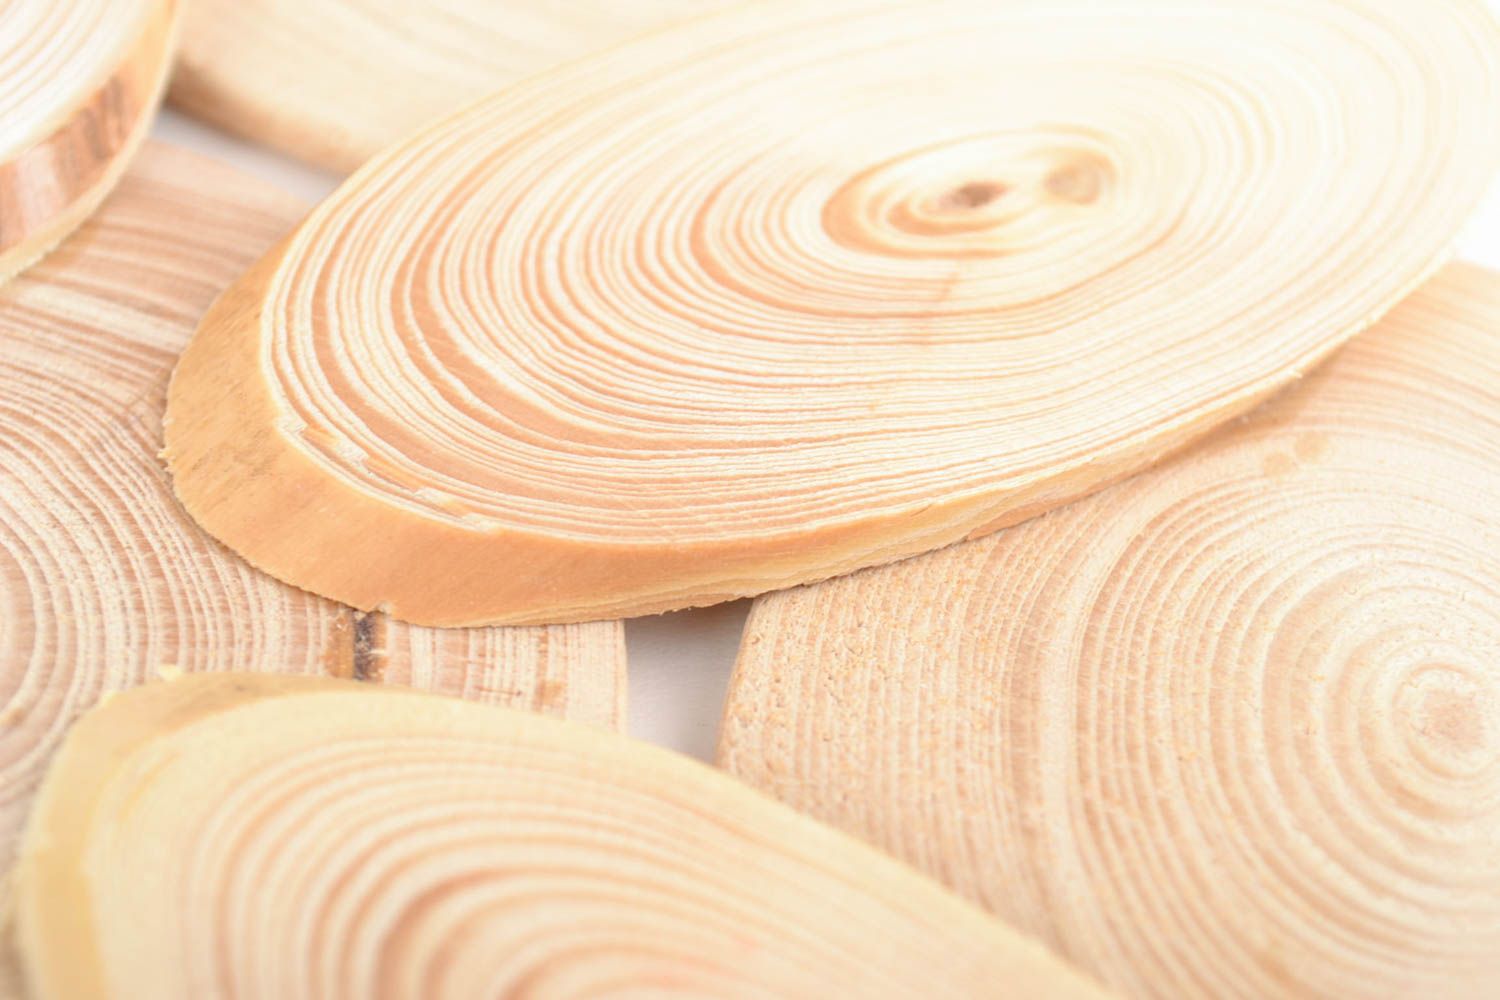 Handmade Untersetzer aus Holz für Heißes nicht groß hell in Küche nützlich schön foto 3